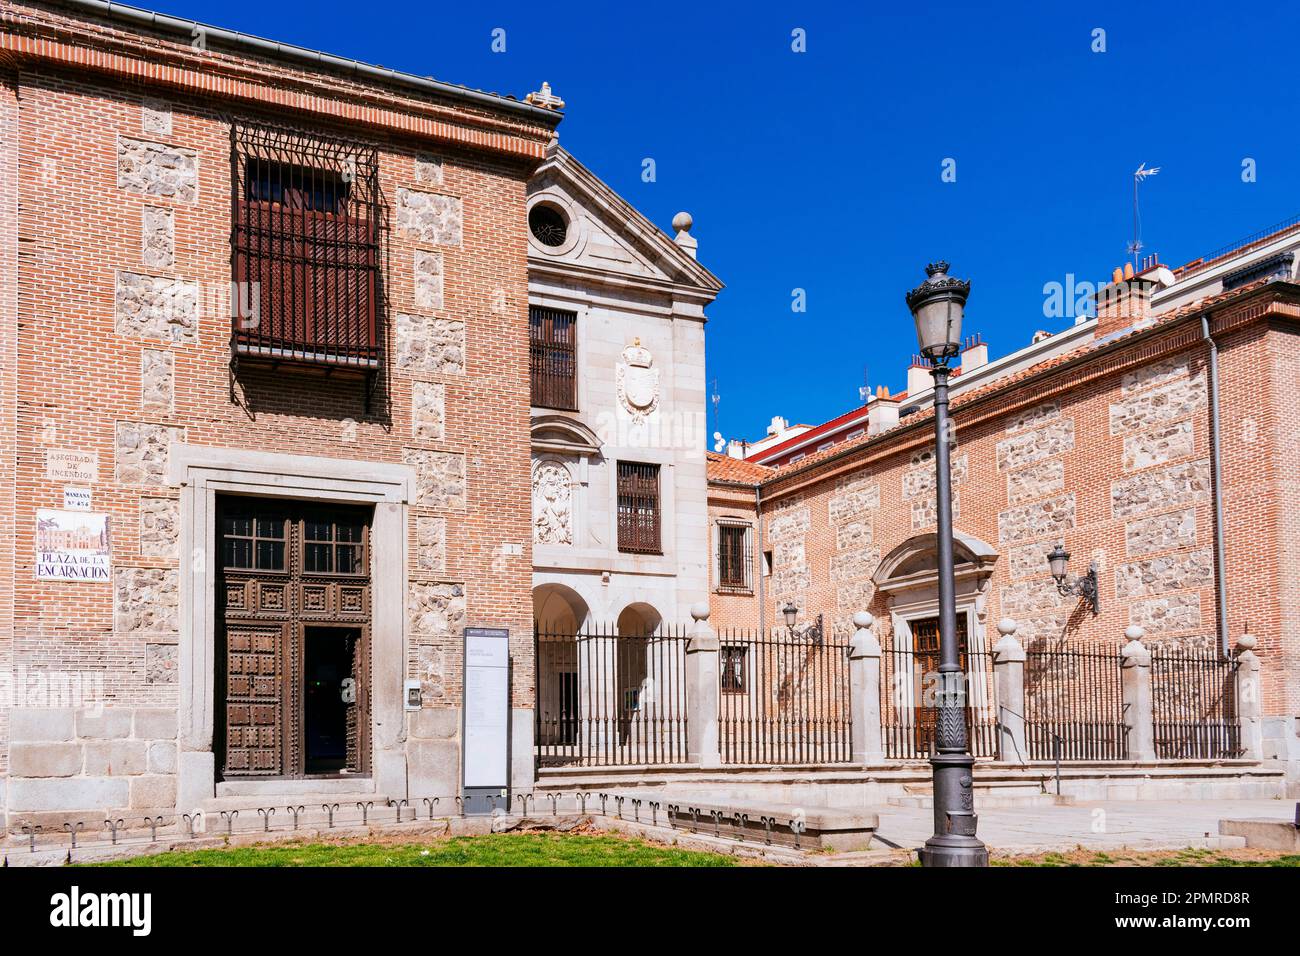 Real Monasterio de la Encarnación - Monastère royal de l'Incarnation. Madrid, Comunidad de Madrid, Espagne, Europe Banque D'Images